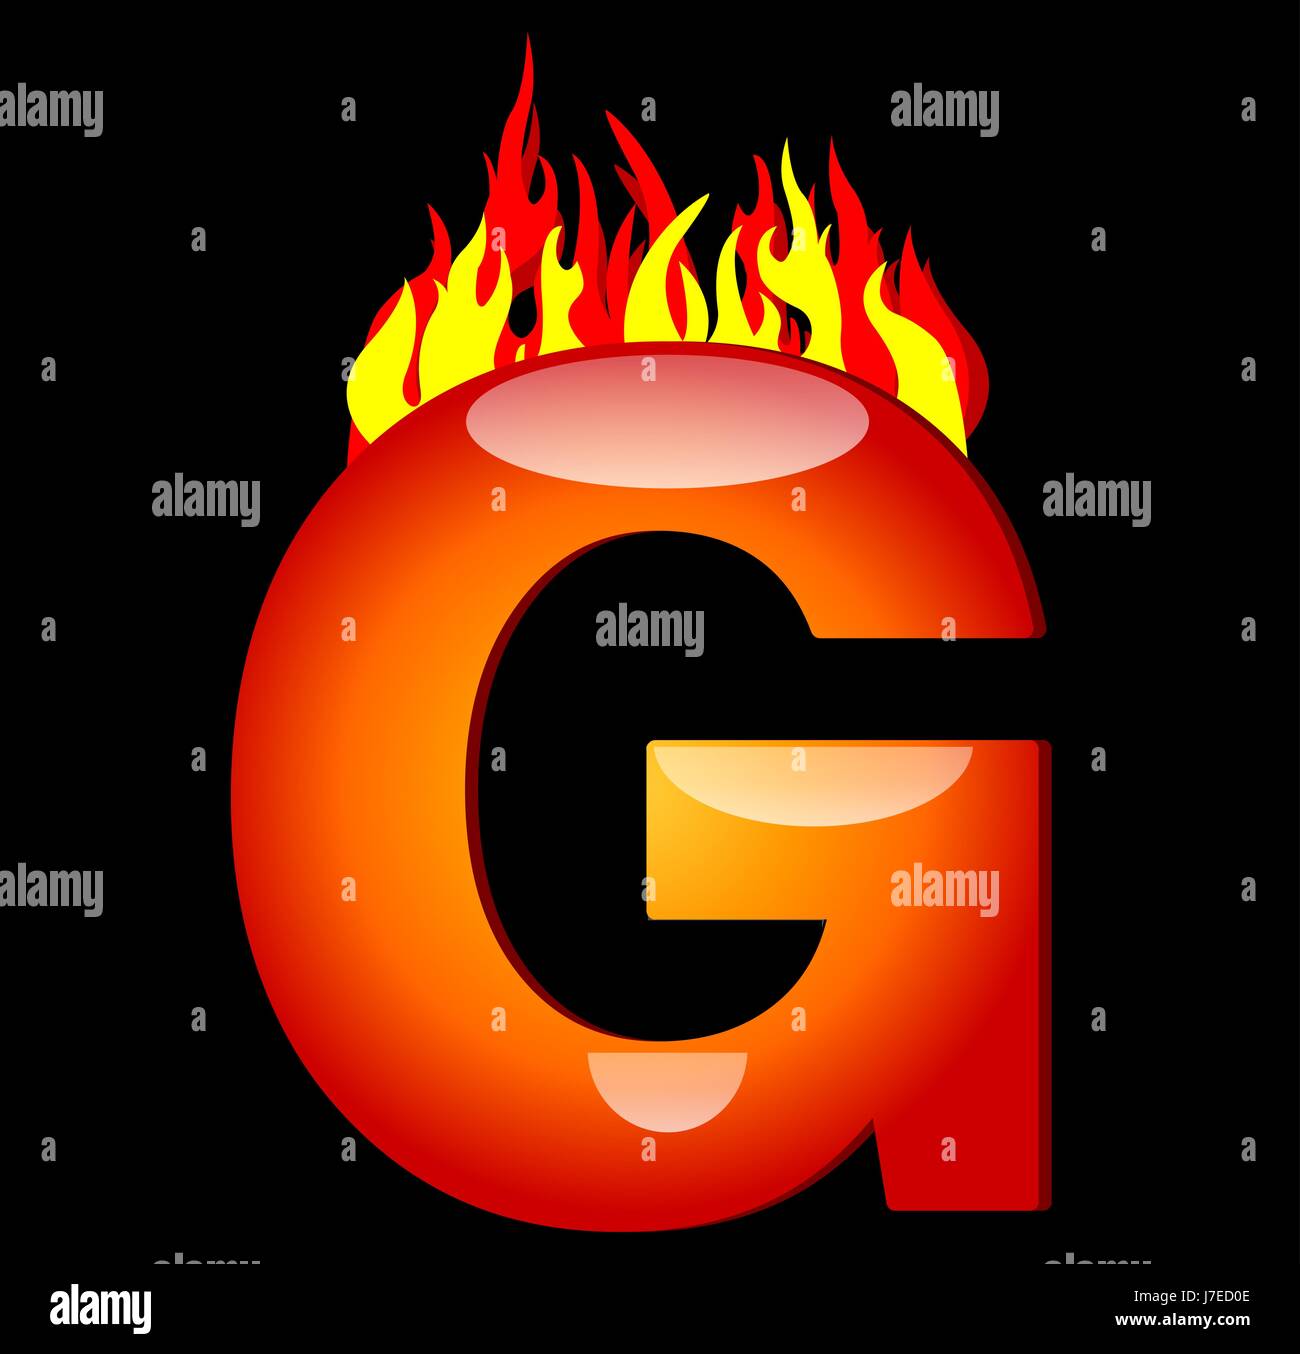 burning letter g Stock Photo